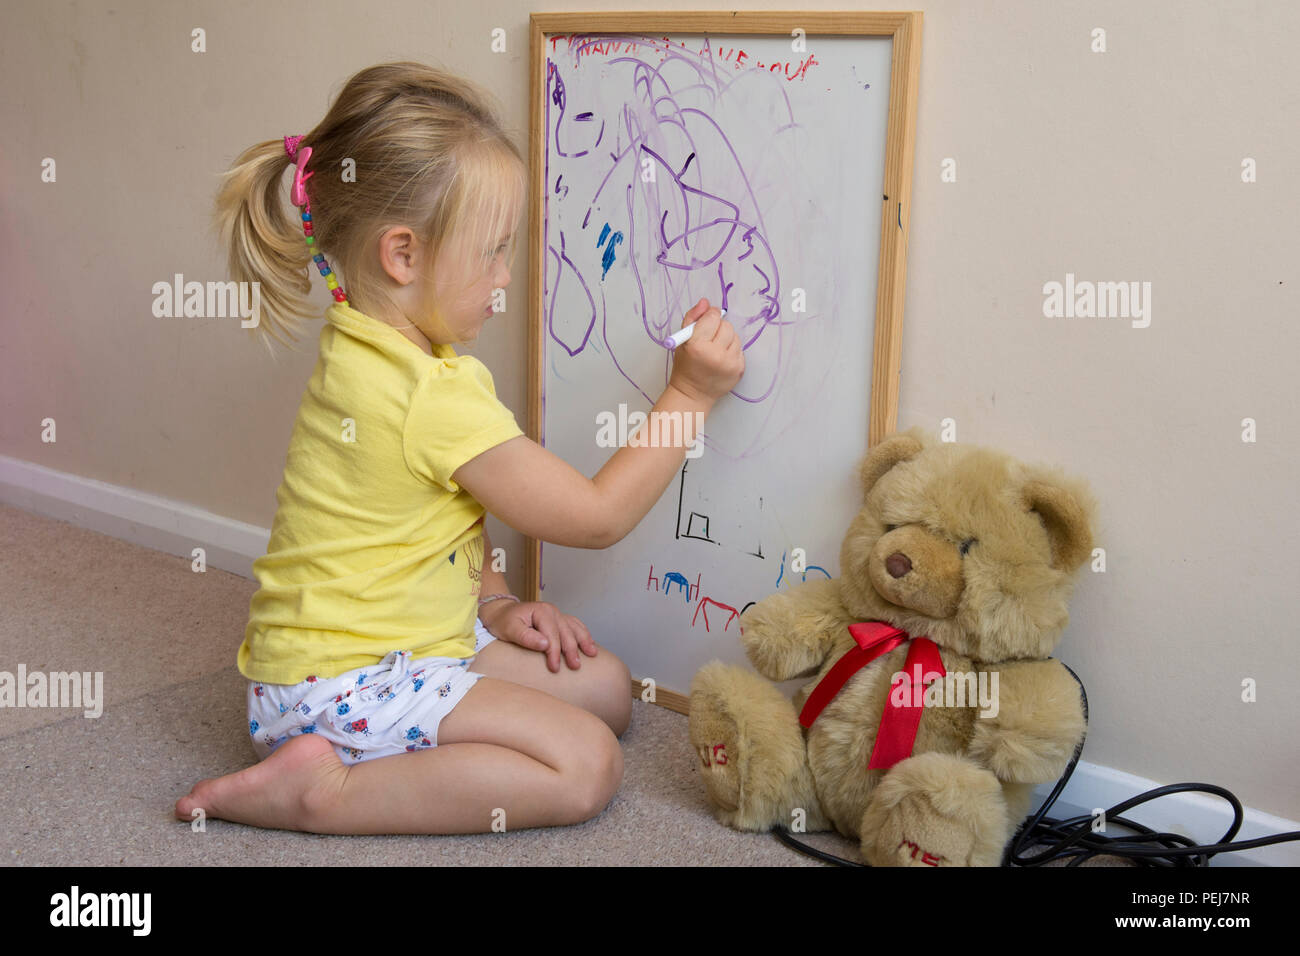 Jeune fillette de deux ans le dessin avec un stylo de couleur sur un tableau blanc, d'être artistique, Banque D'Images